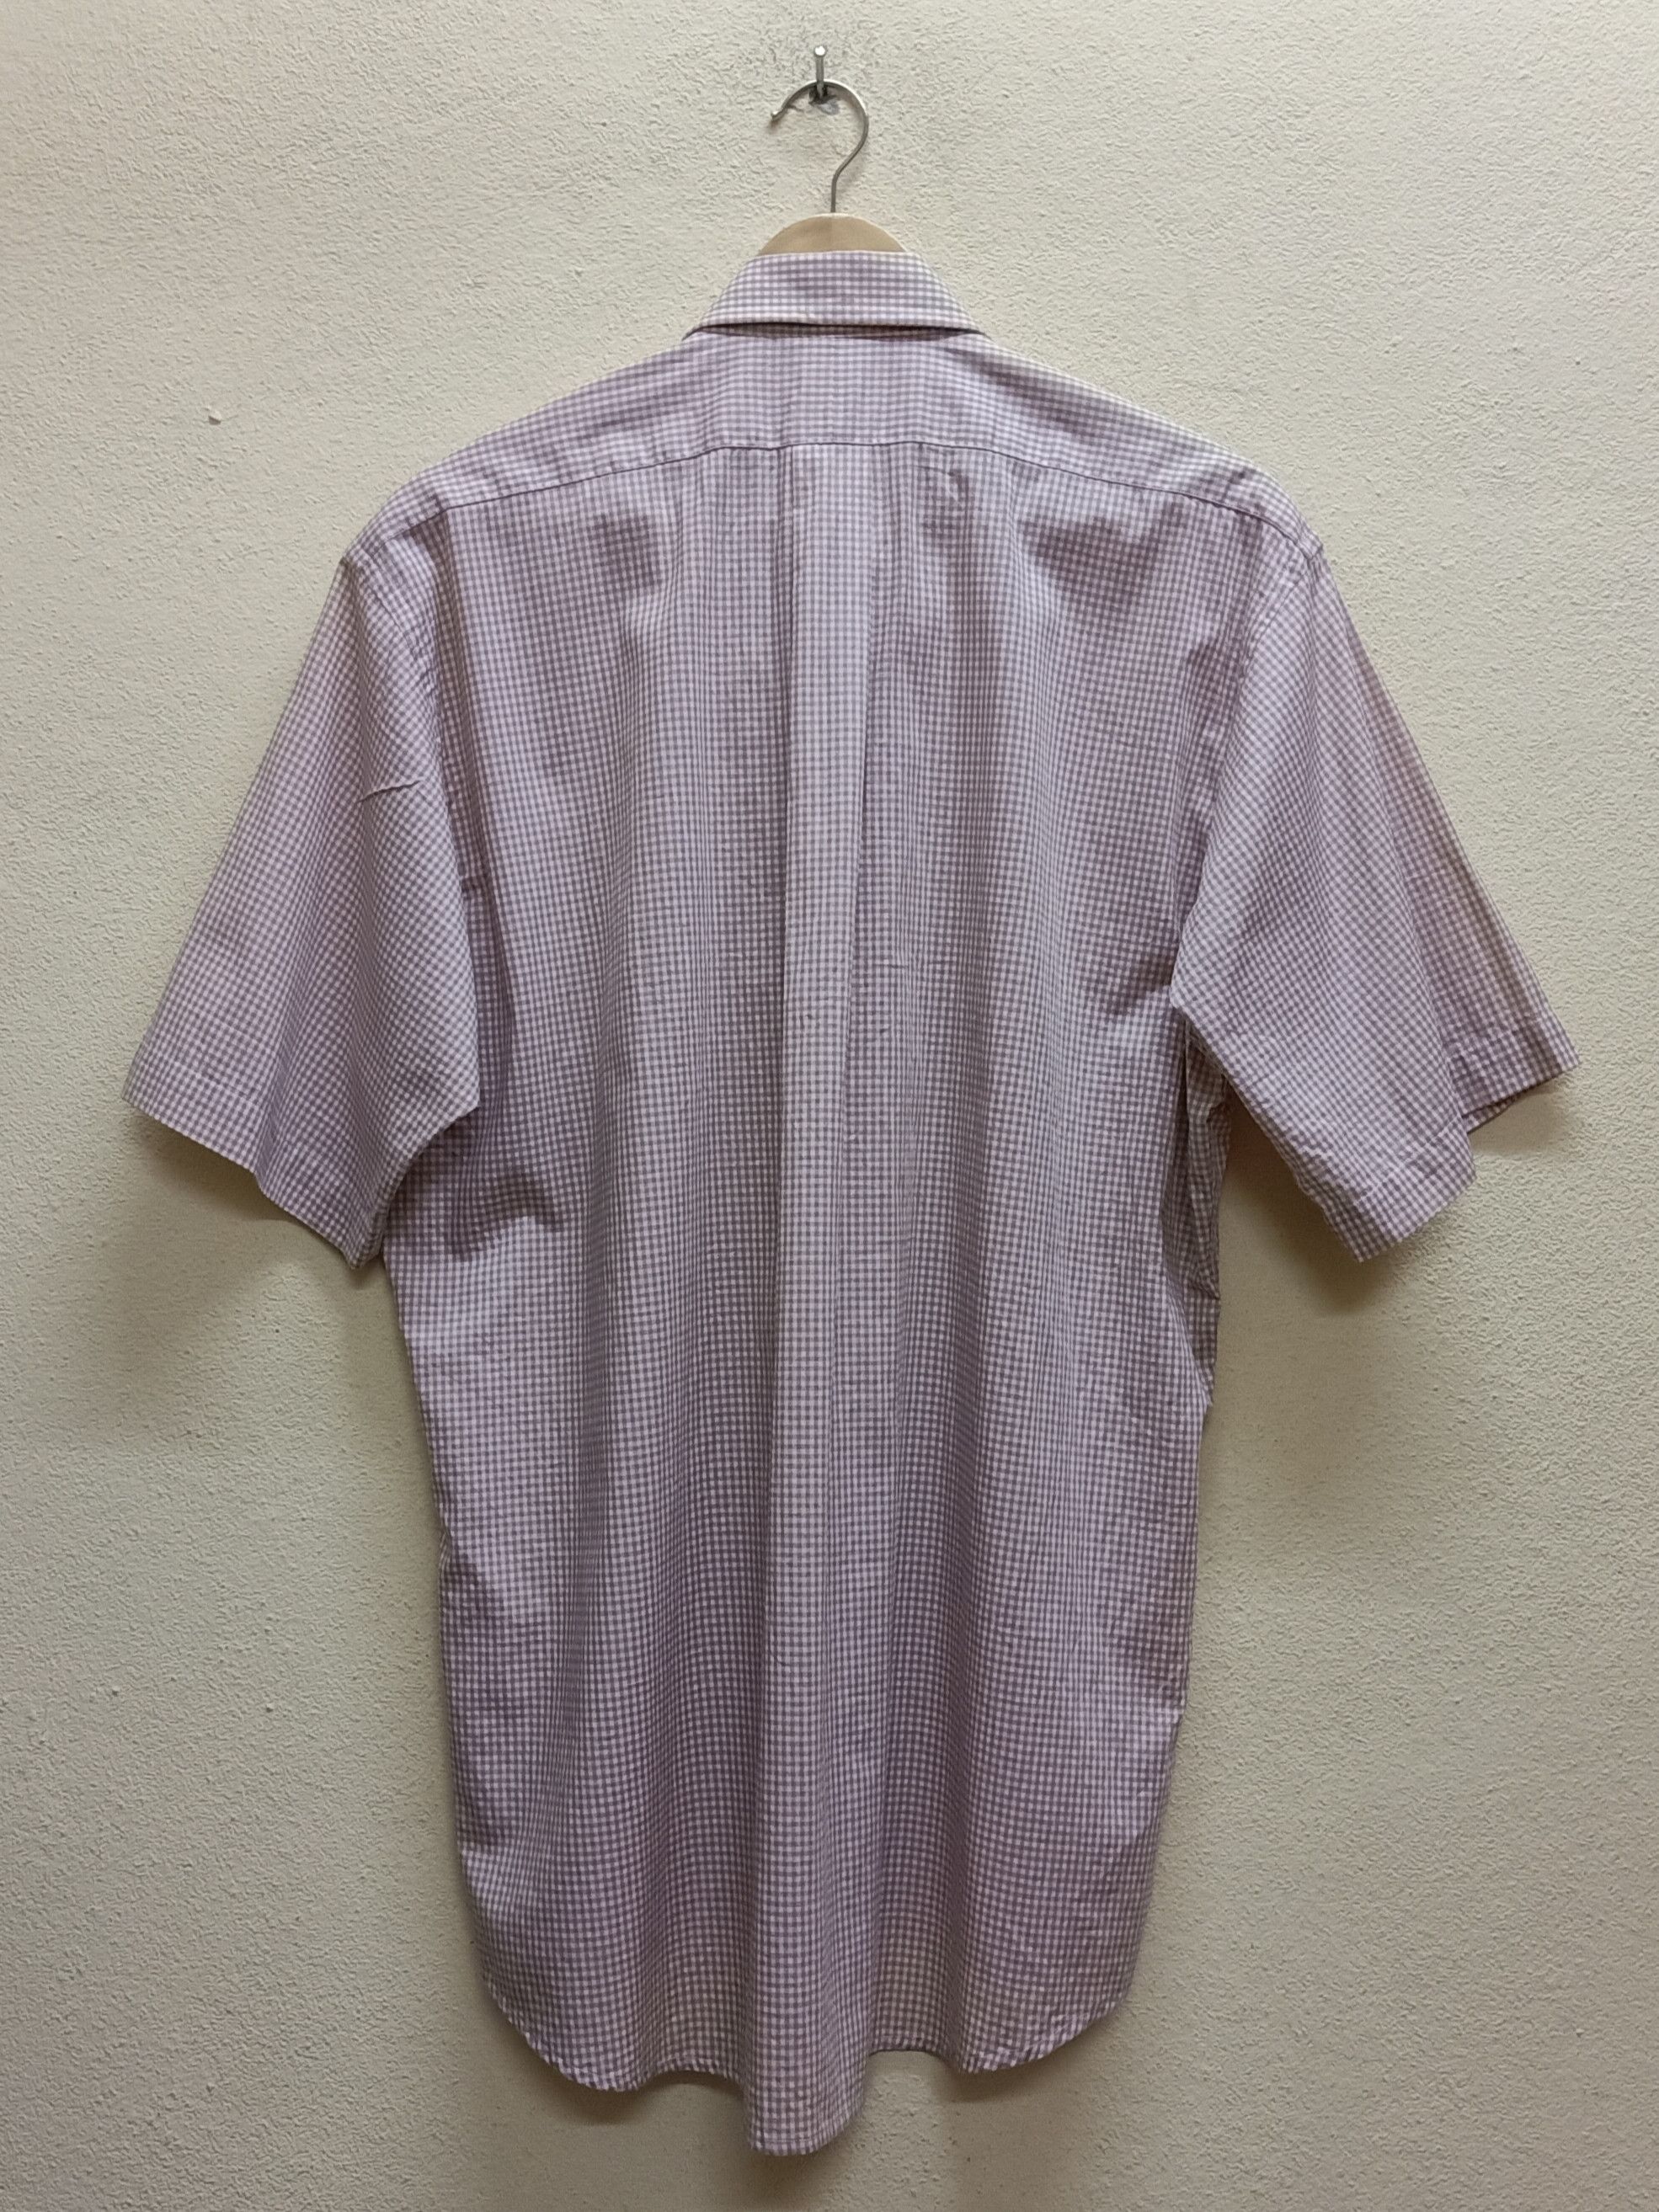 Vintage YVES SAINT LAURENT Pour Homme Peach Checkered Shirts. Size US S / EU 44-46 / 1 - 2 Preview